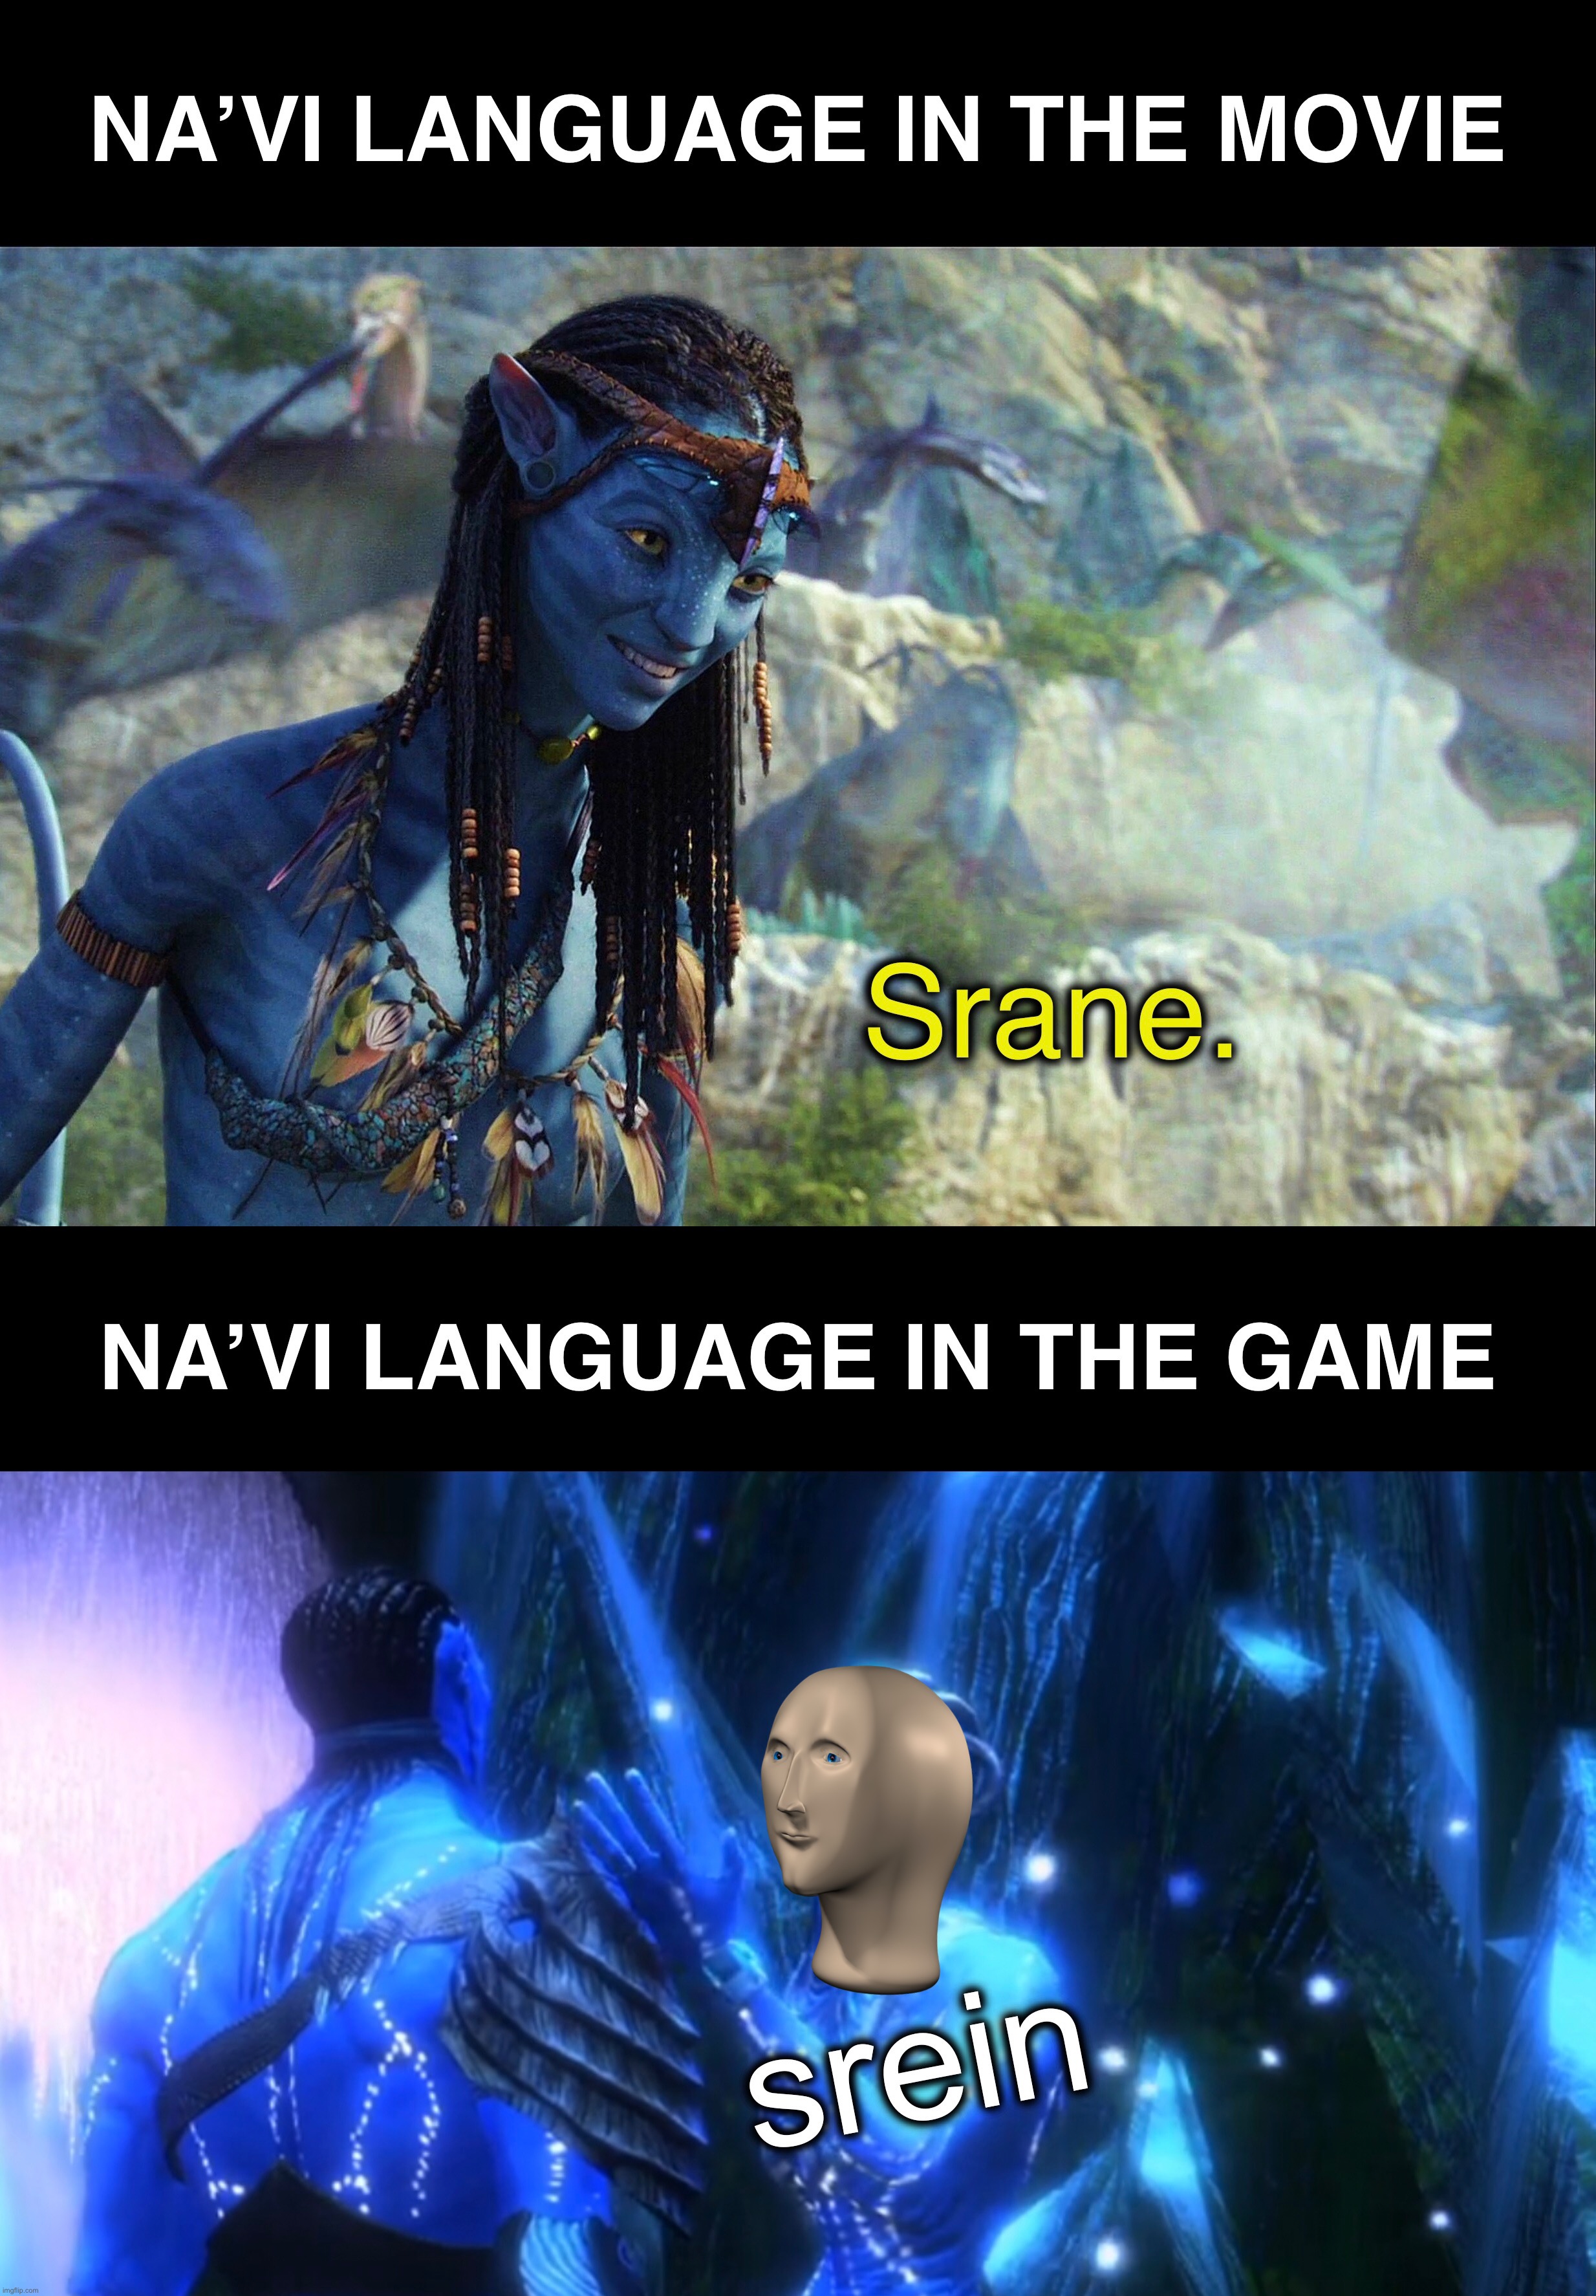 Trò chơi Avatar đã chính thức được cập nhật phiên bản mới nhất với đồ họa sắc nét và thêm nhiều tính năng hấp dẫn. Yêu cầu kĩ năng tinh thông và chiến lược, trò chơi đã trở nên càng hấp dẫn hơn bao giờ hết. Tải xuống ngay để trải nghiệm khoảnh khắc giải trí thú vị nhất.